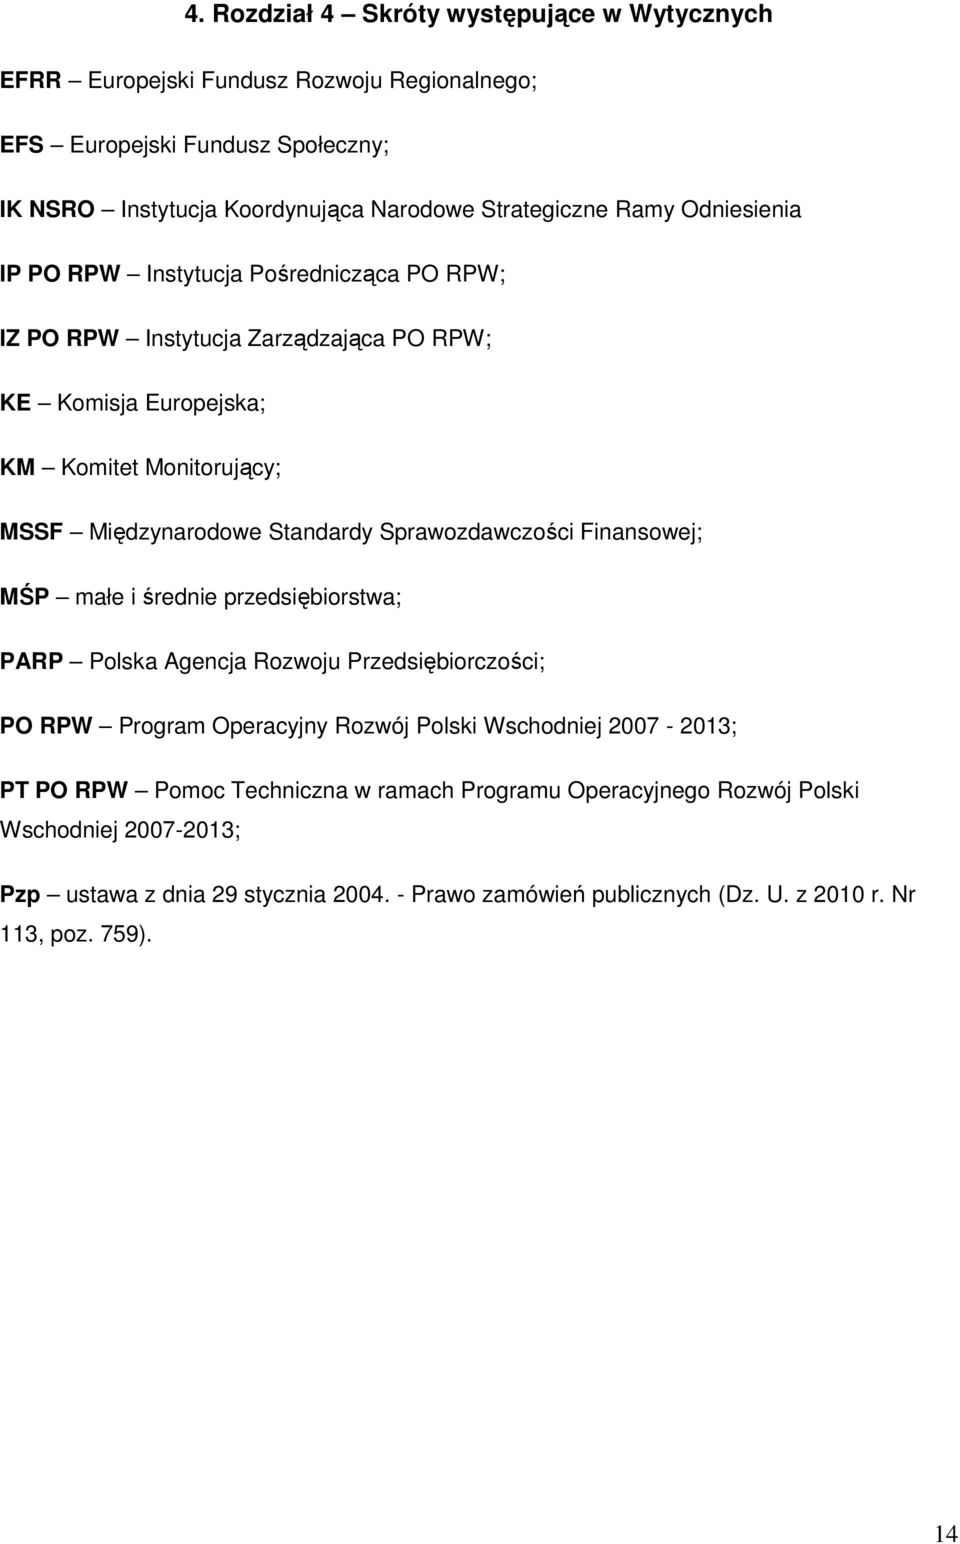 Sprawozdawczości Finansowej; MŚP małe i średnie przedsiębiorstwa; PARP Polska Agencja Rozwoju Przedsiębiorczości; PO RPW Program Operacyjny Rozwój Polski Wschodniej 2007-2013; PT PO